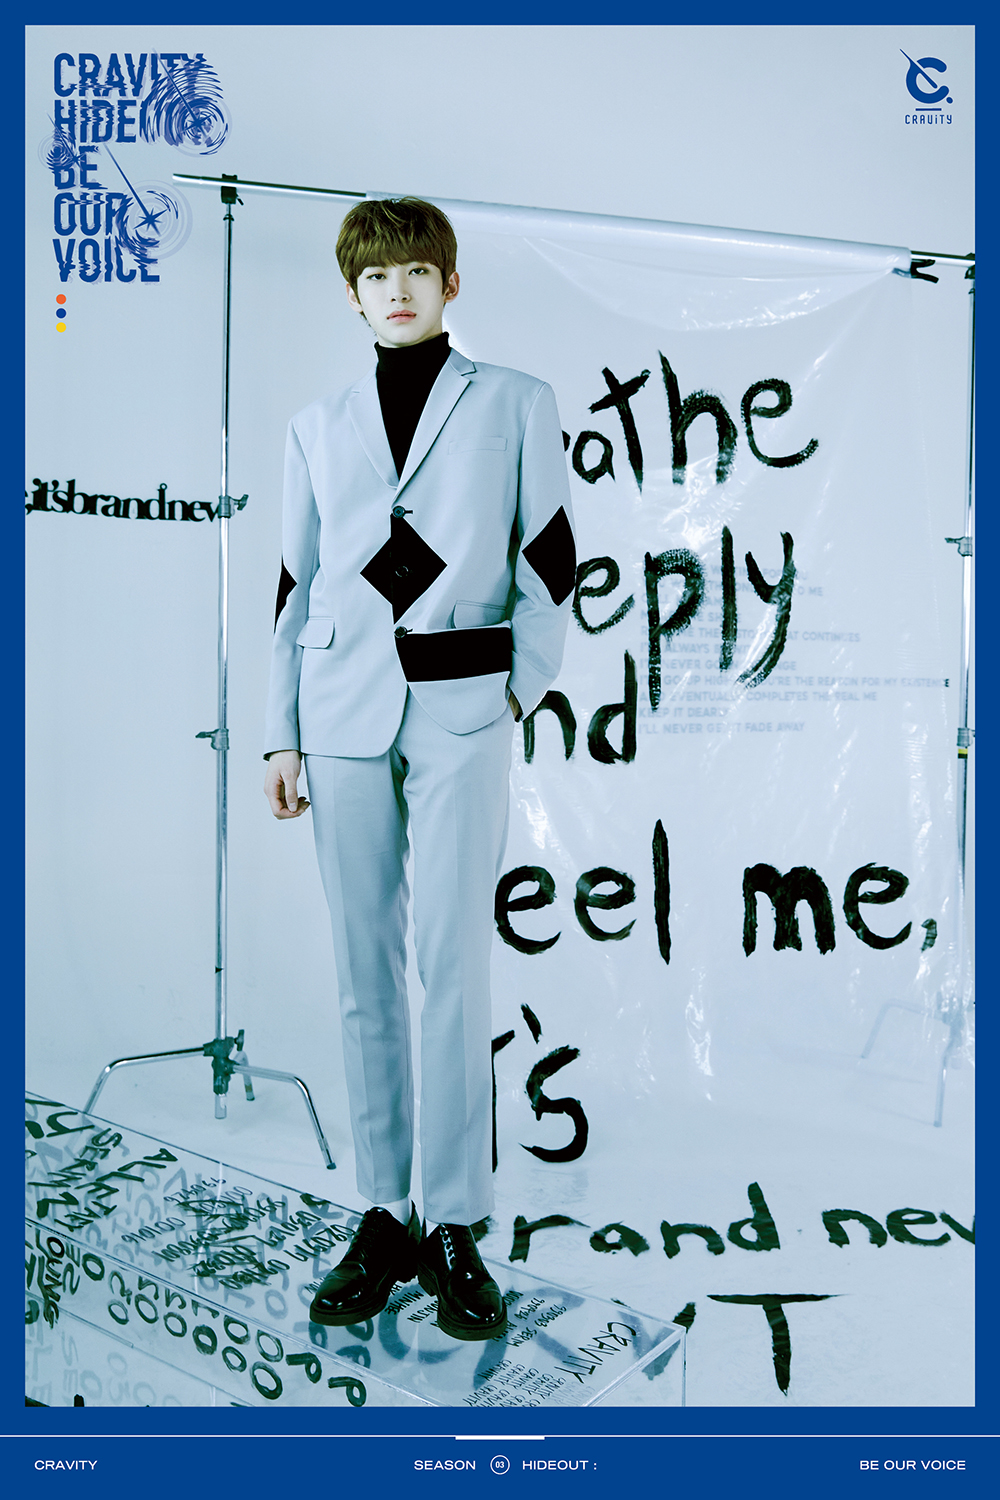 크래비티 3번째 앨범 'BE OUR VOICE' 컨셉포토 ver.2 - 원진, 정모, 앨런